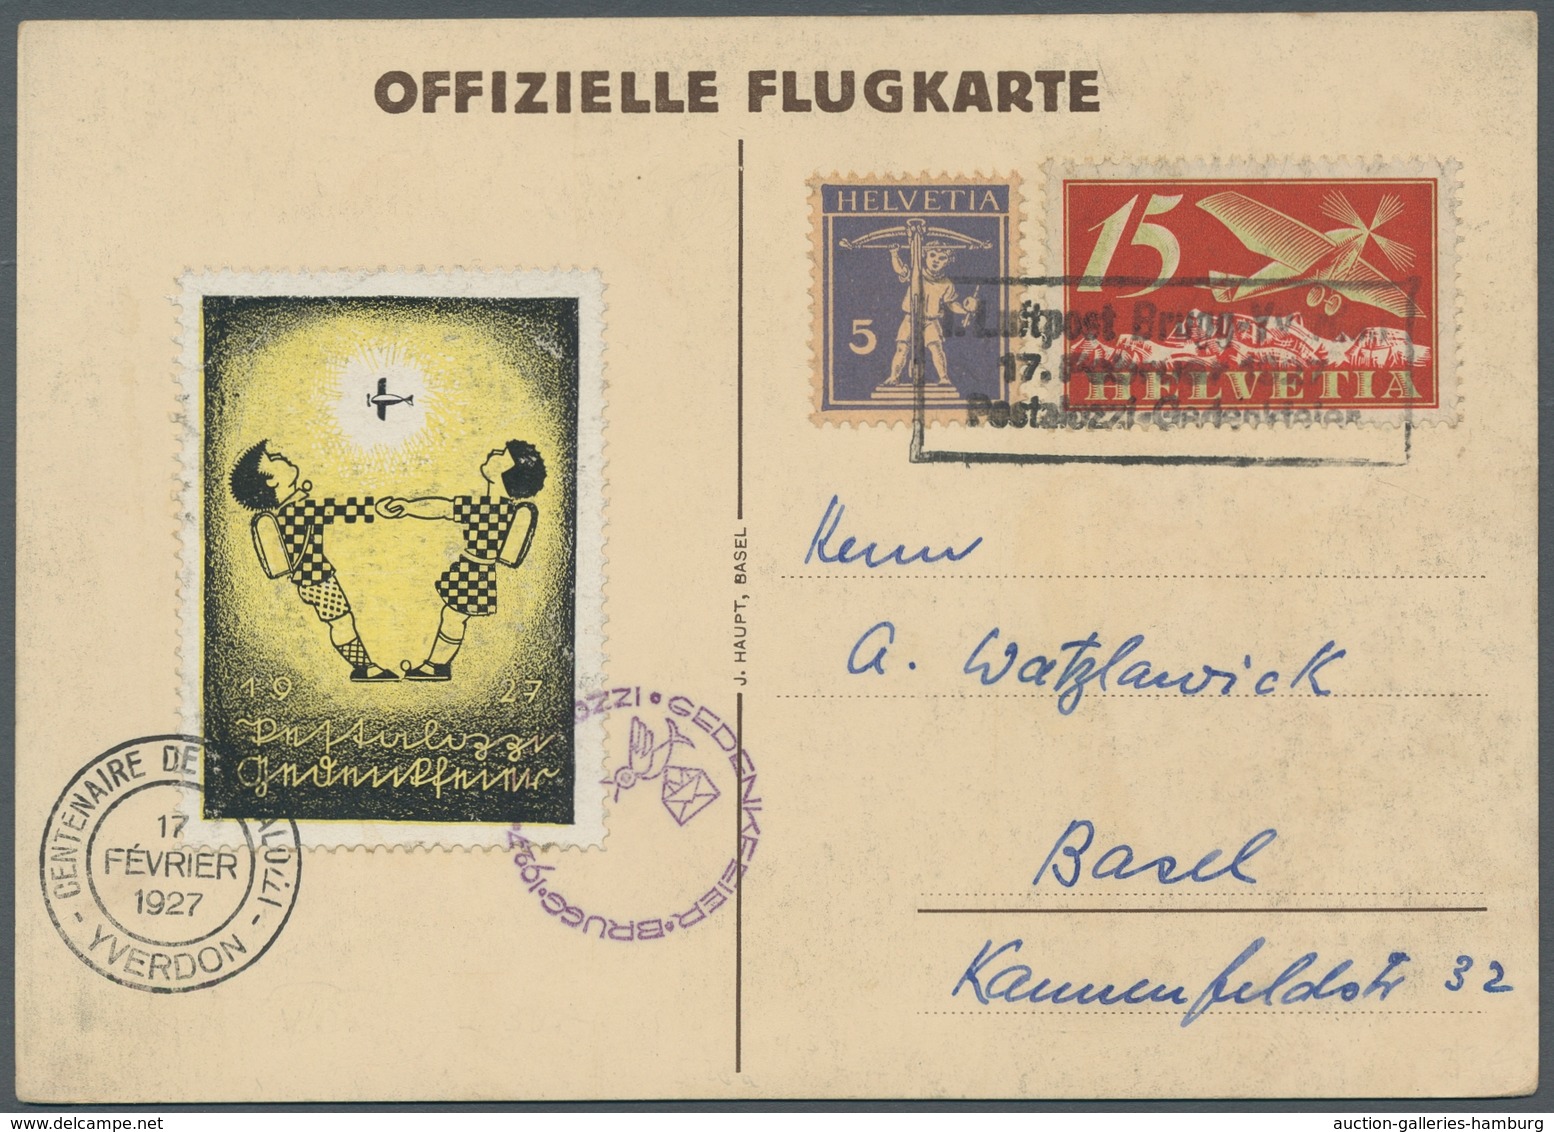 Schweiz: 1927, Pestalozzi-Gedenkflug Brugg-Yverdon, Offizielle Flugkarte Mit Farbiger Vignette Und F - Gebruikt